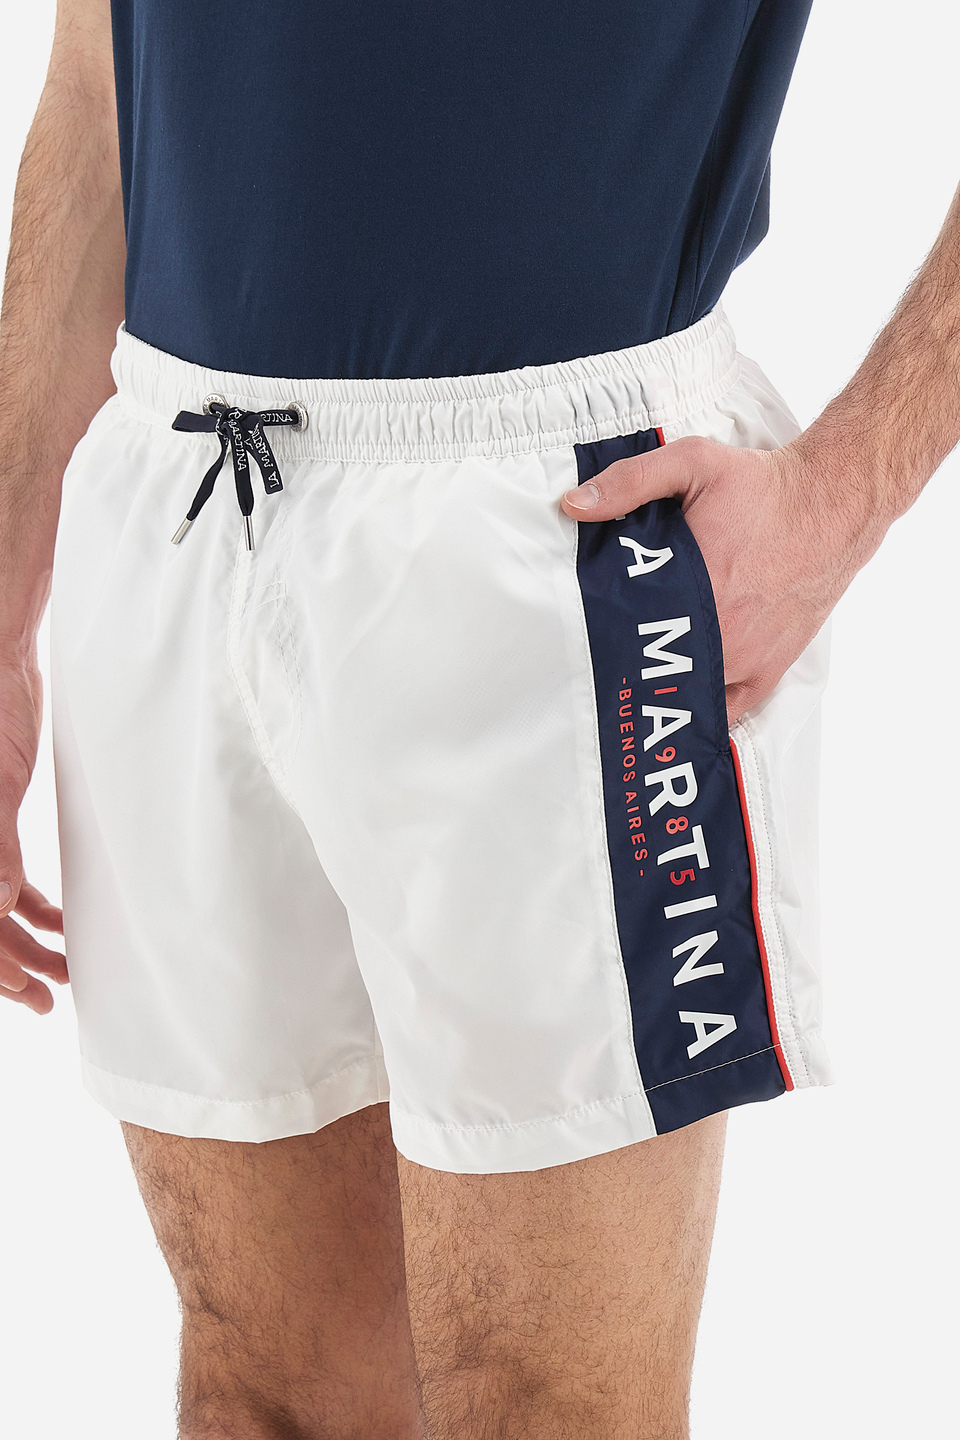 Regular fit men's swim trunks with drawstring waist - Vittoriano Optic ...